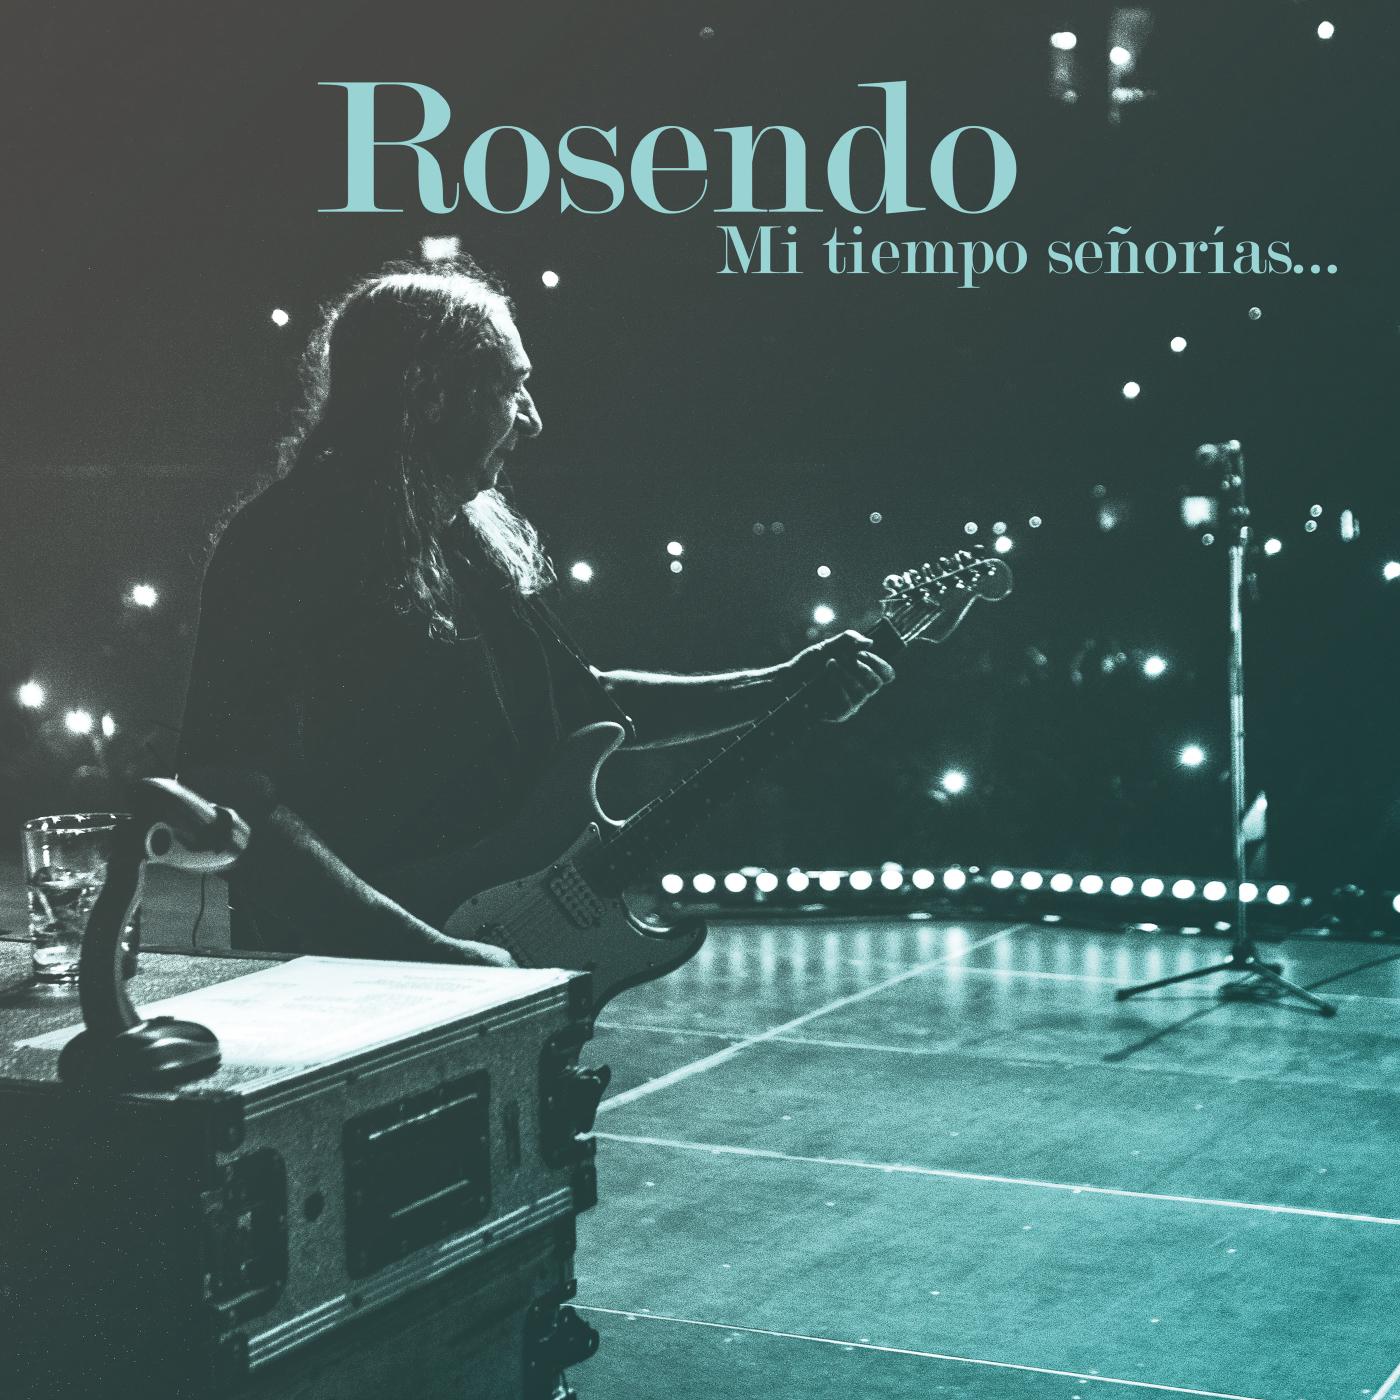 Rosendo - Mala vida (Directo en el Wizink Center, Madrid, 20 diciembre 2018)